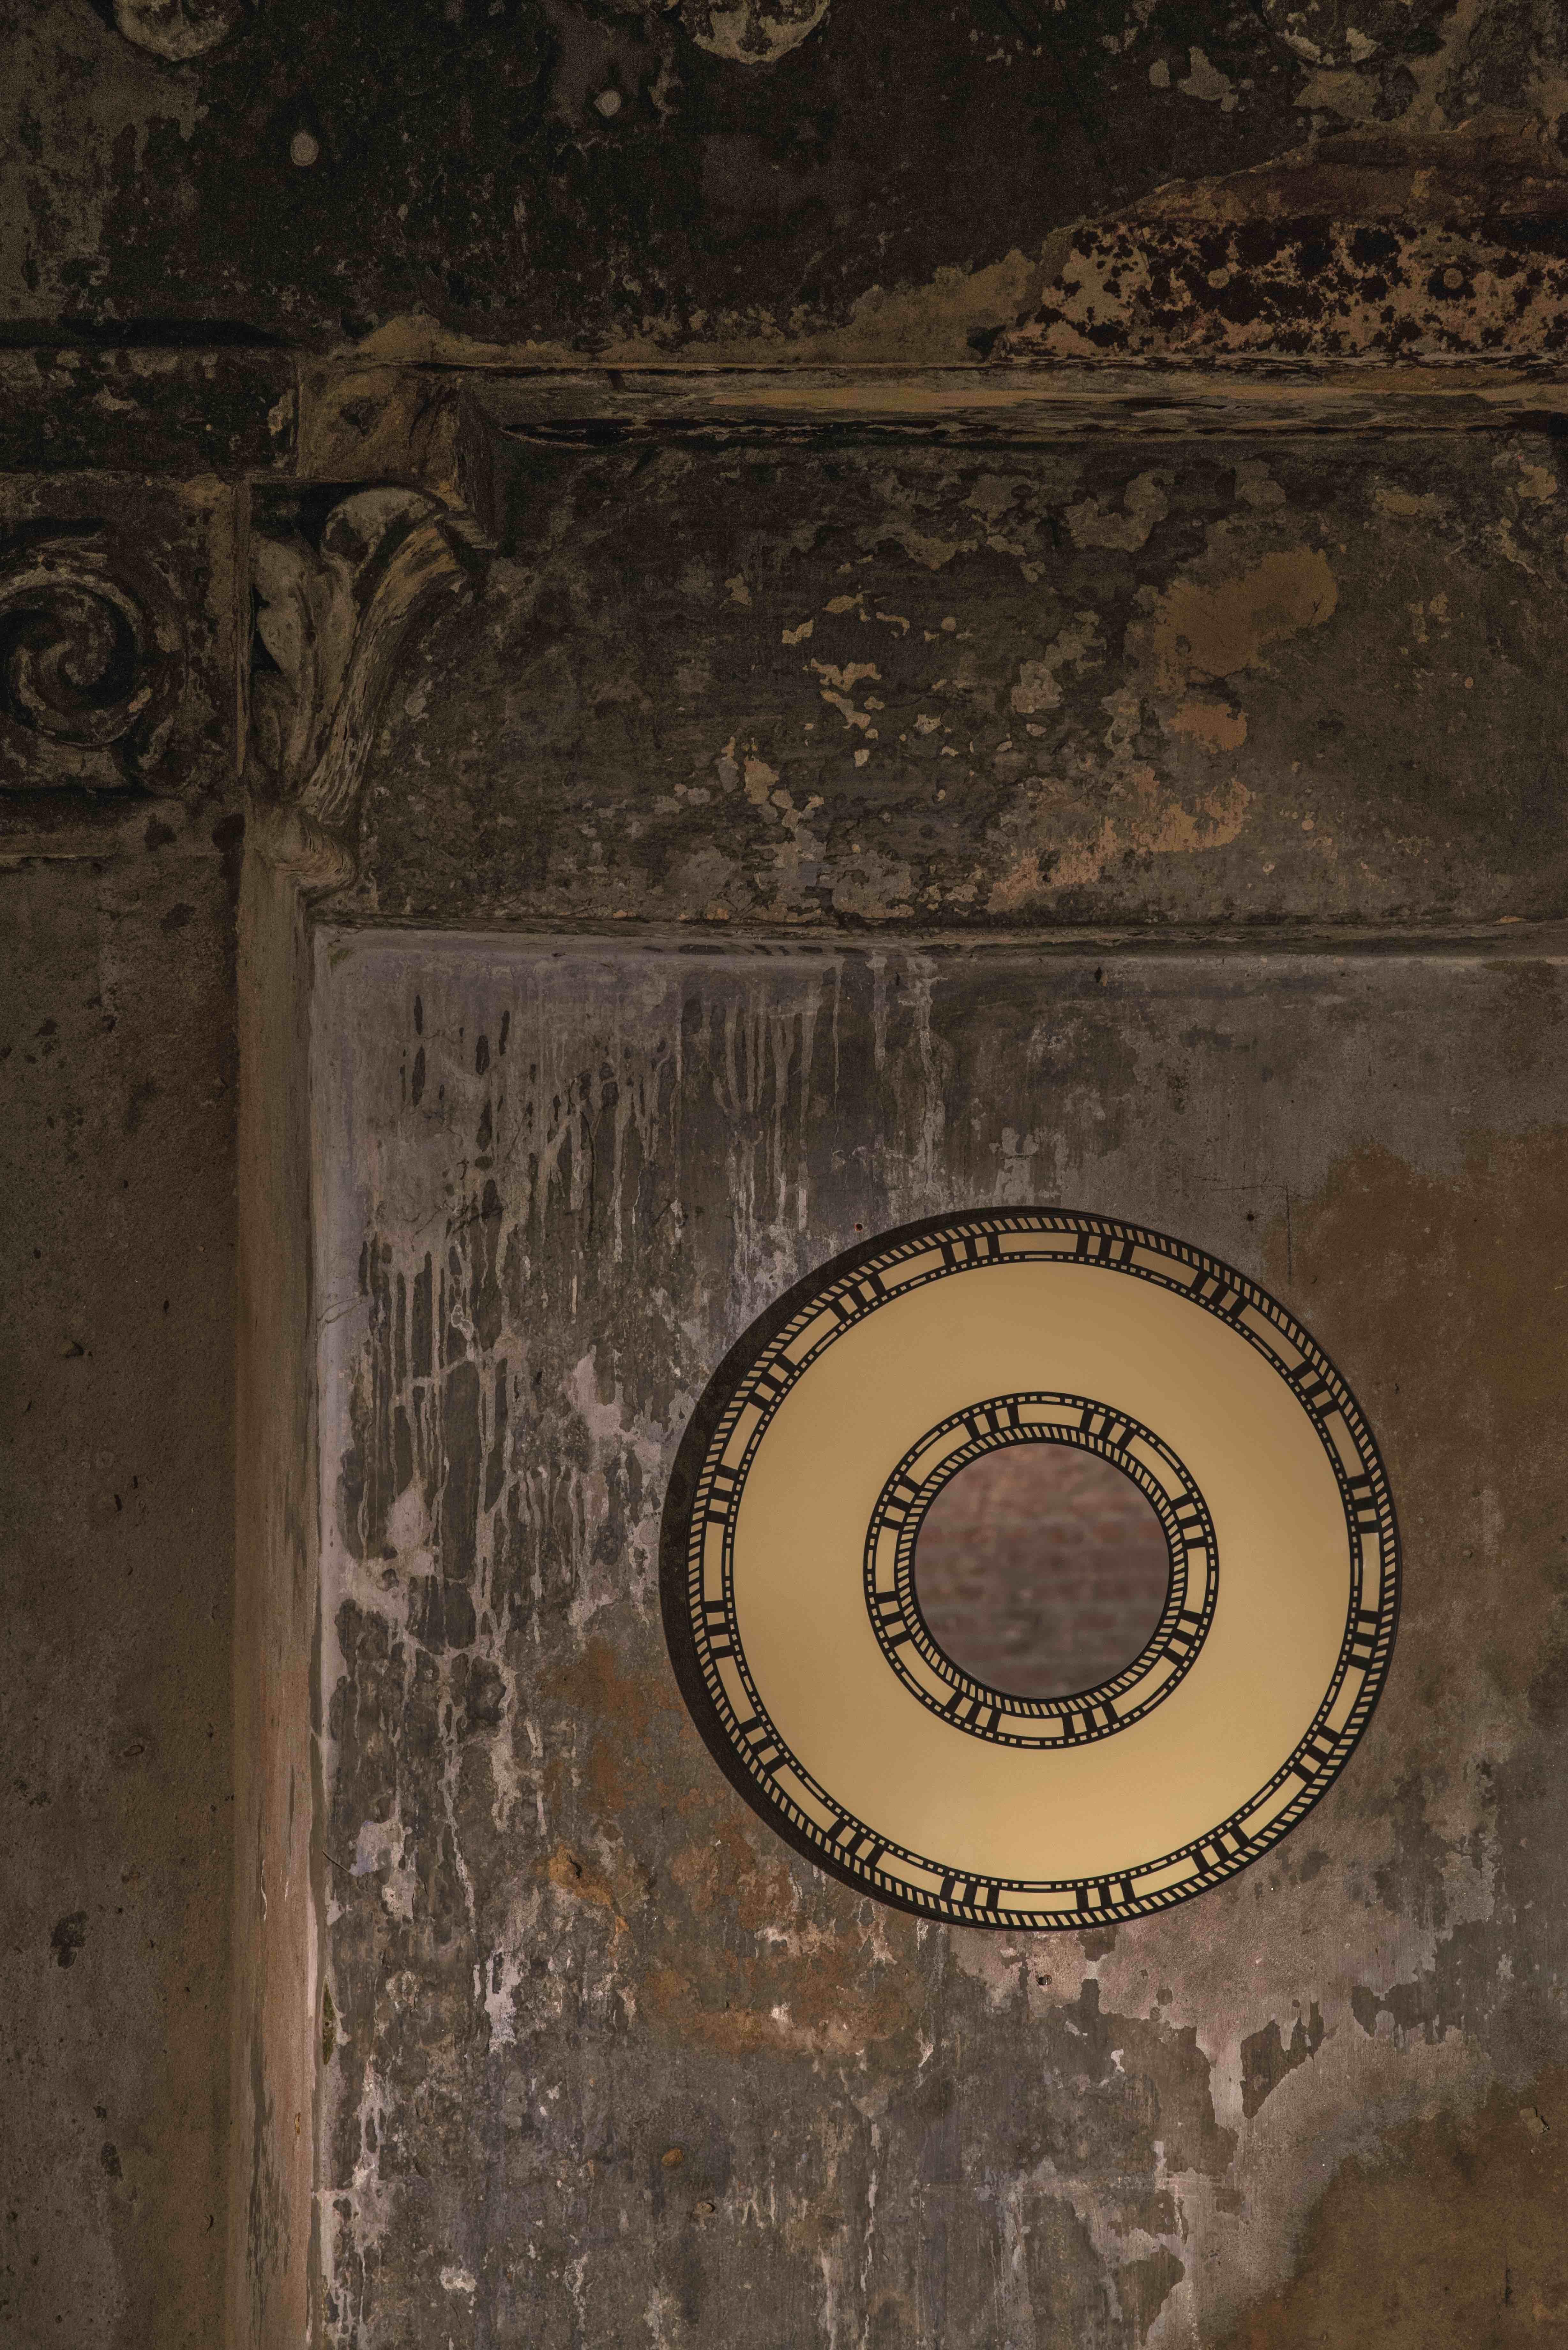 Le Sunrise Wall Console Mirror de Matteo Cibic est un joli miroir rond, assez petit.

L'artisanat indien est aussi varié que ses cultures et aussi riche que son histoire. L'art de la marqueterie d'os et de corne est ici omniprésent. Les artisans de